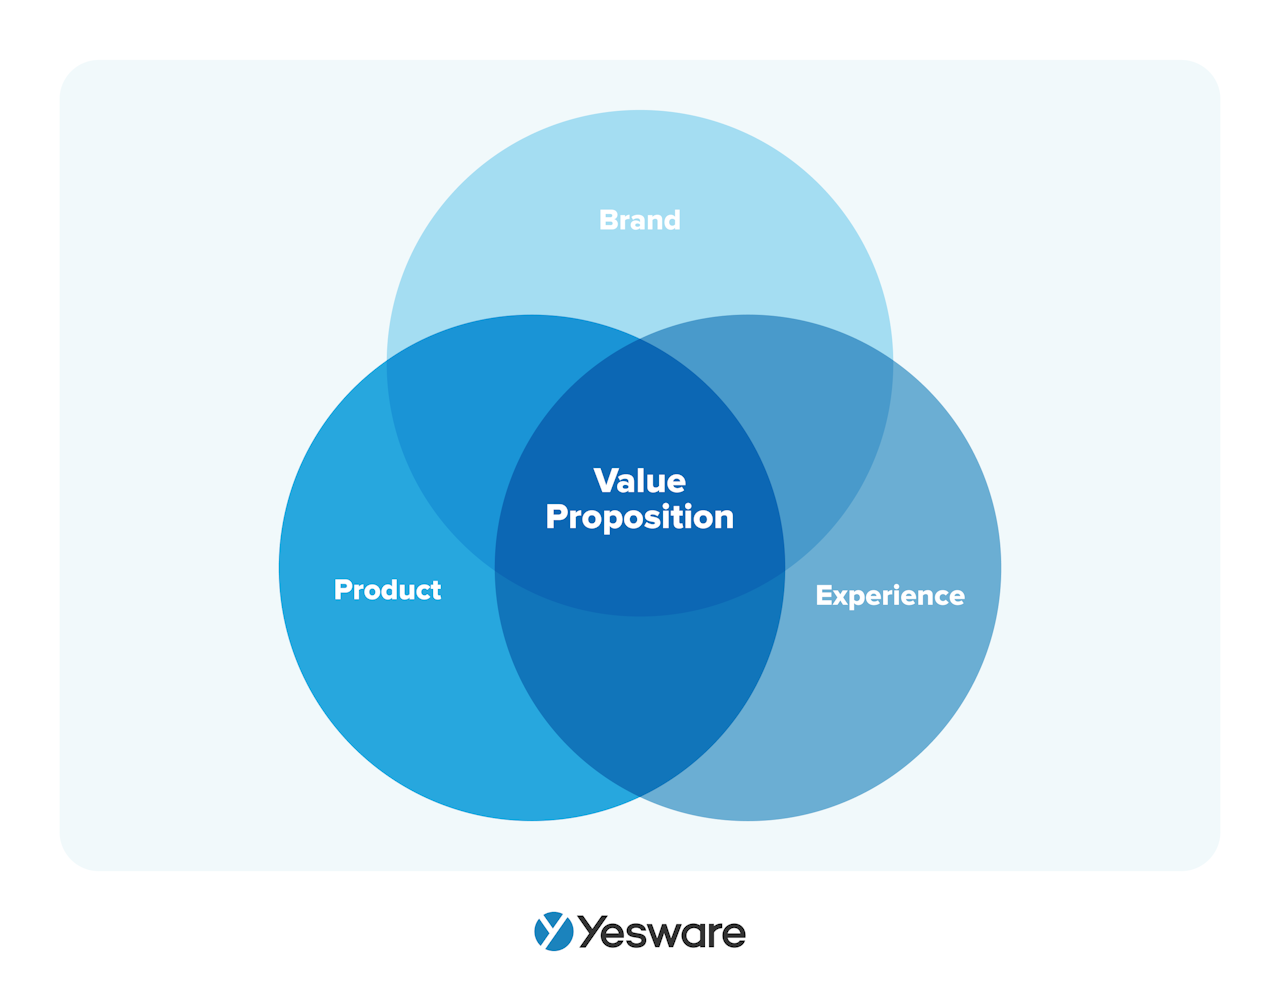 Sales acceleration: value proposition